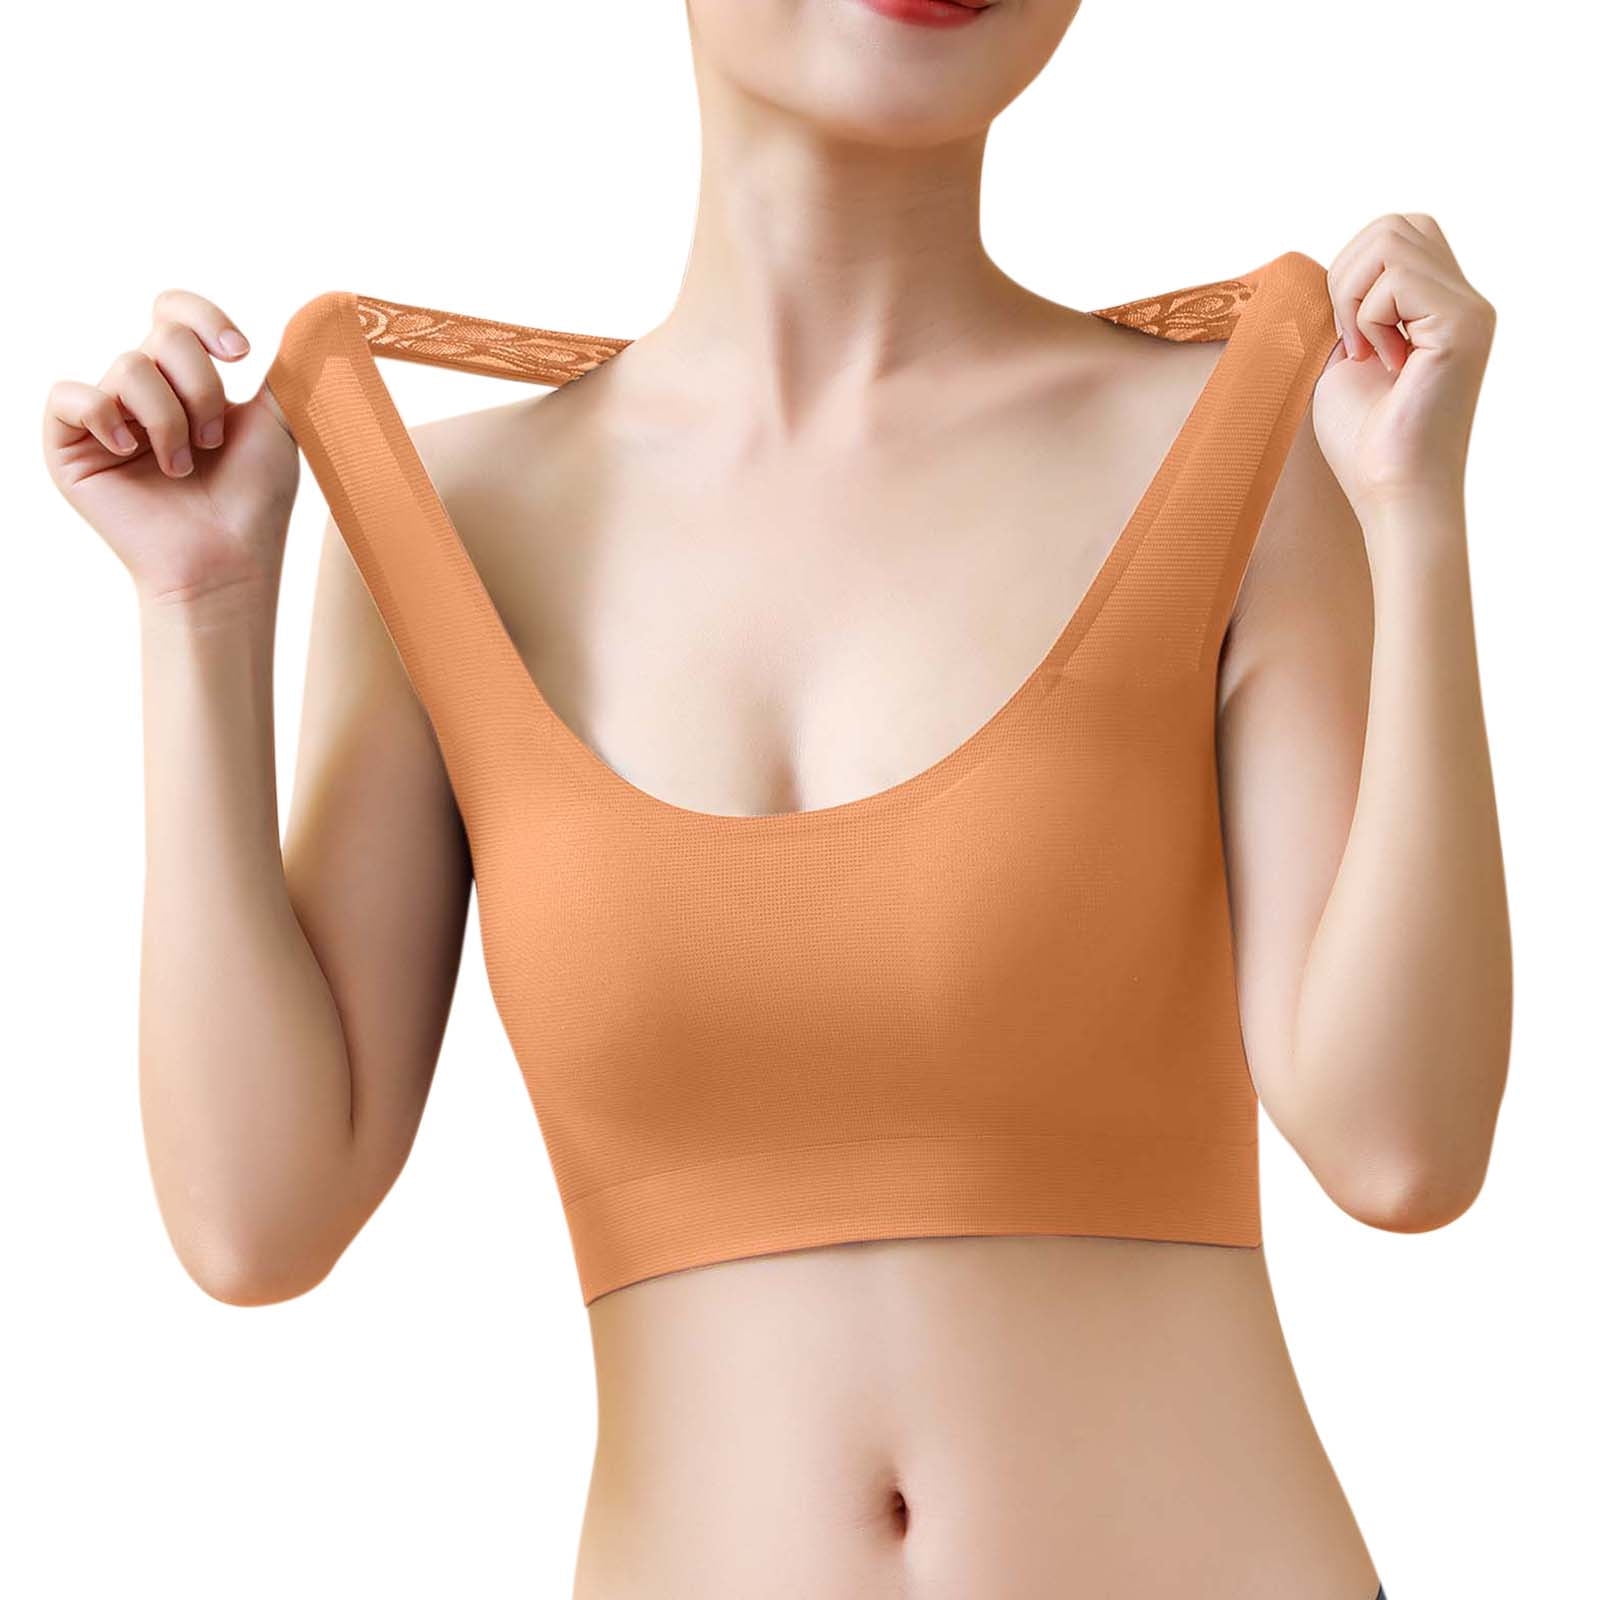 Zuwimk Bras For Women,Women's T-Shirts Modern Micro Seamfree Cami Strap  Bralette Khaki,XL